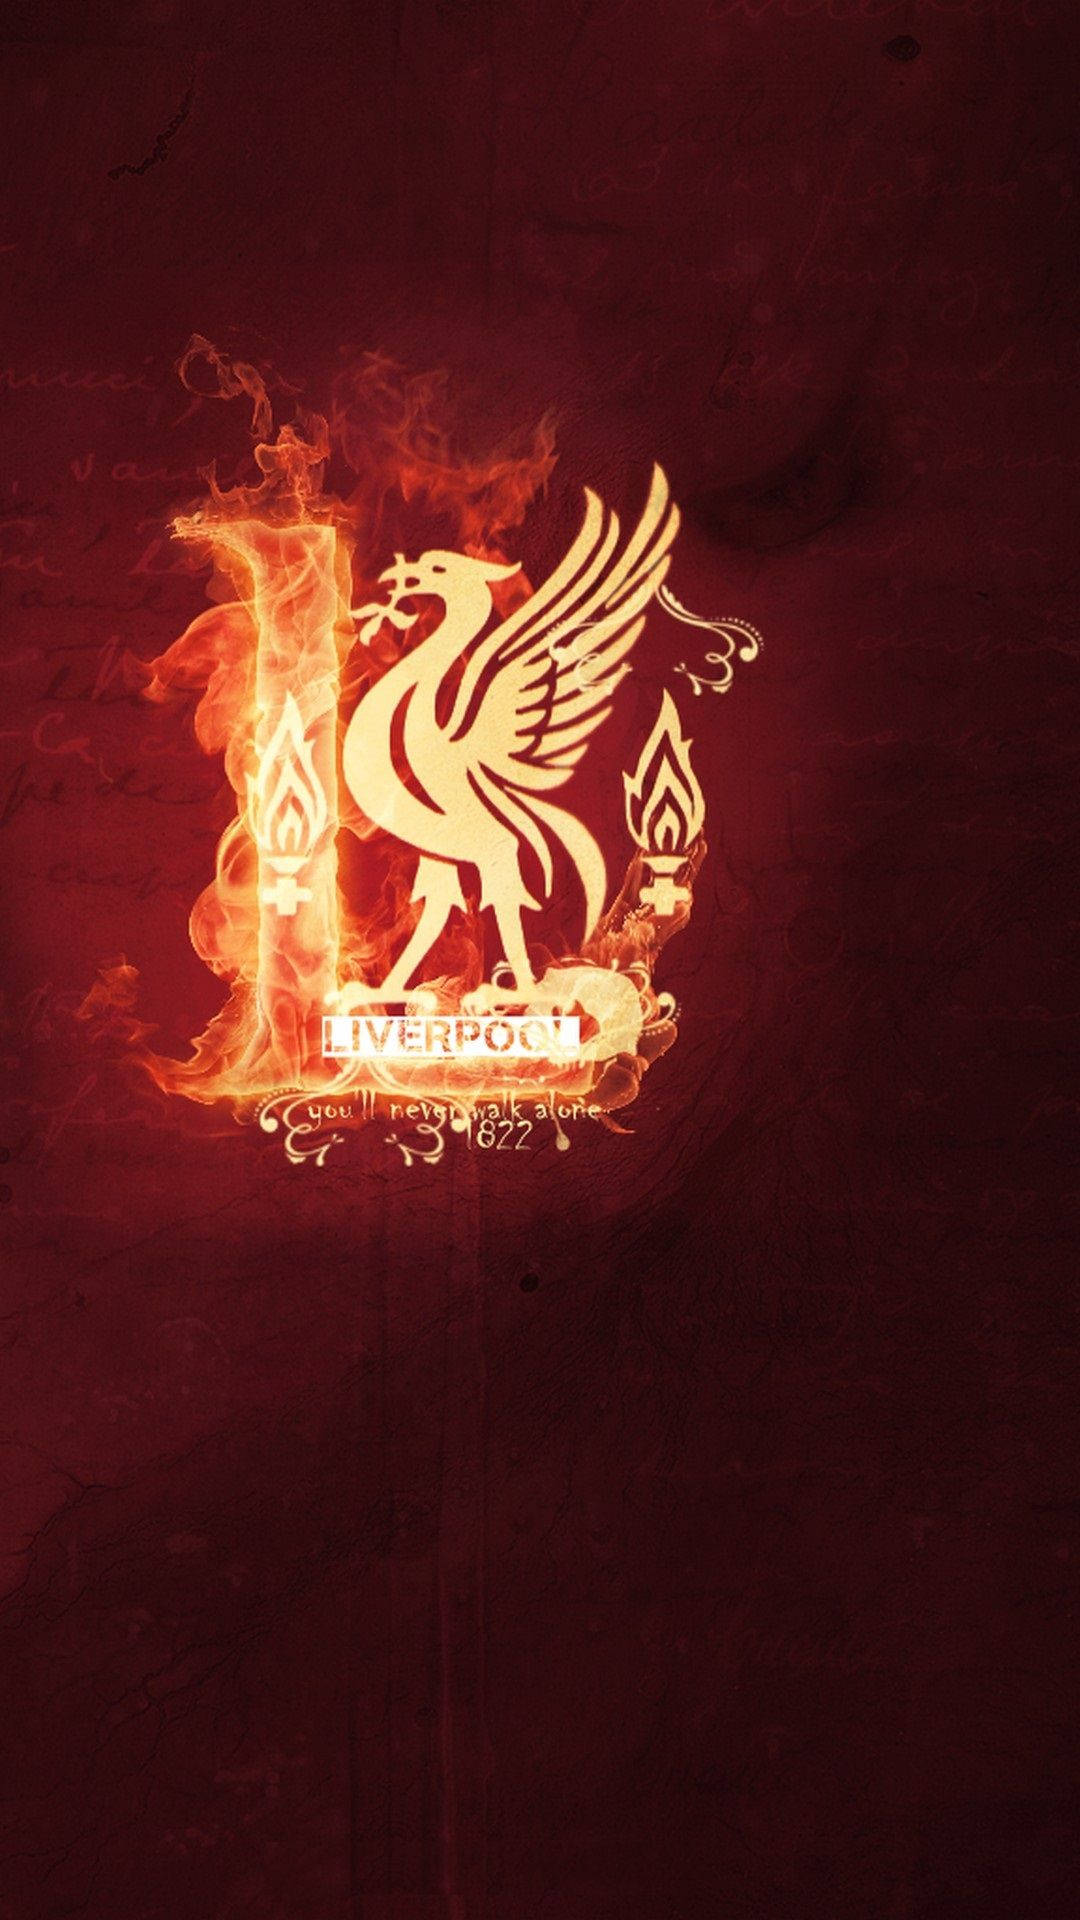 Liverpool Hintergrund